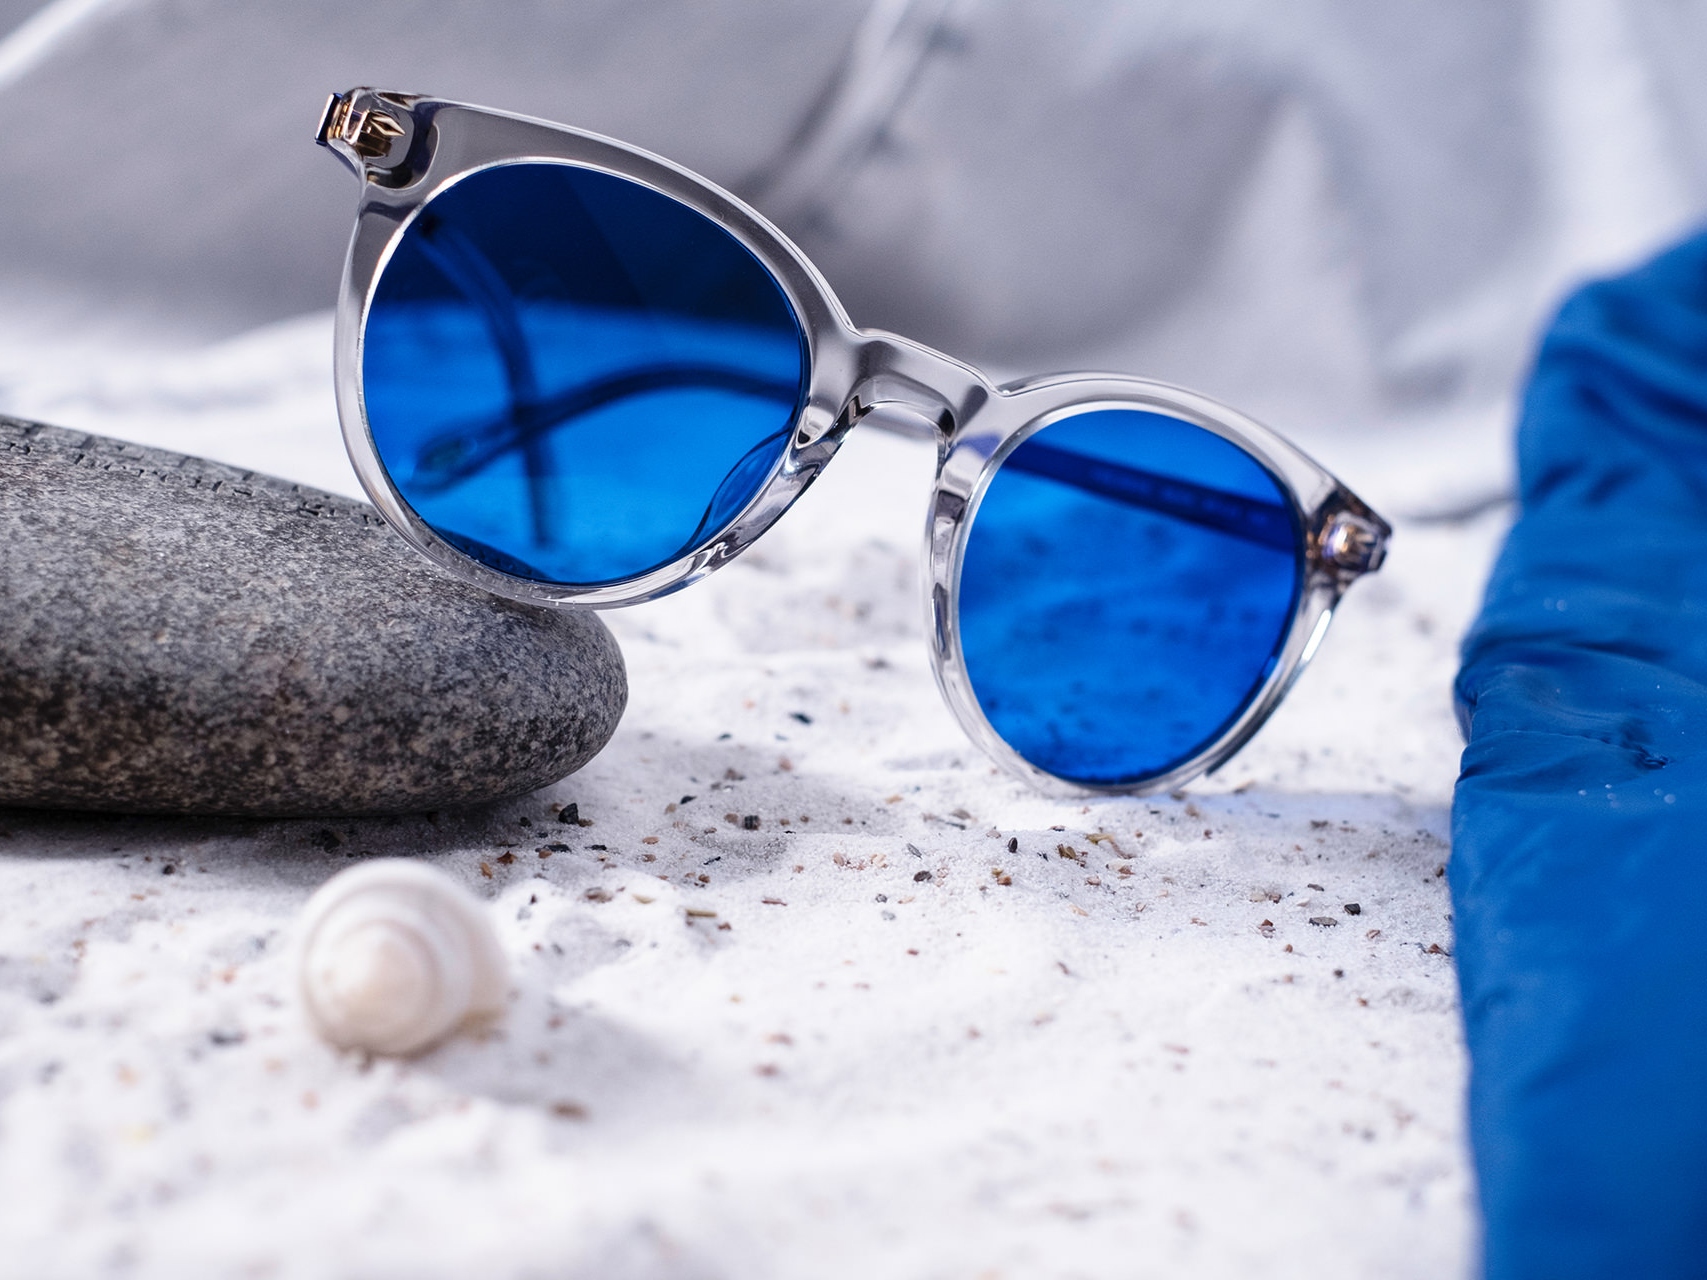 Abbildung einer Sonnenbrille mit blauer Tönung, die halb auf einem Stein liegt